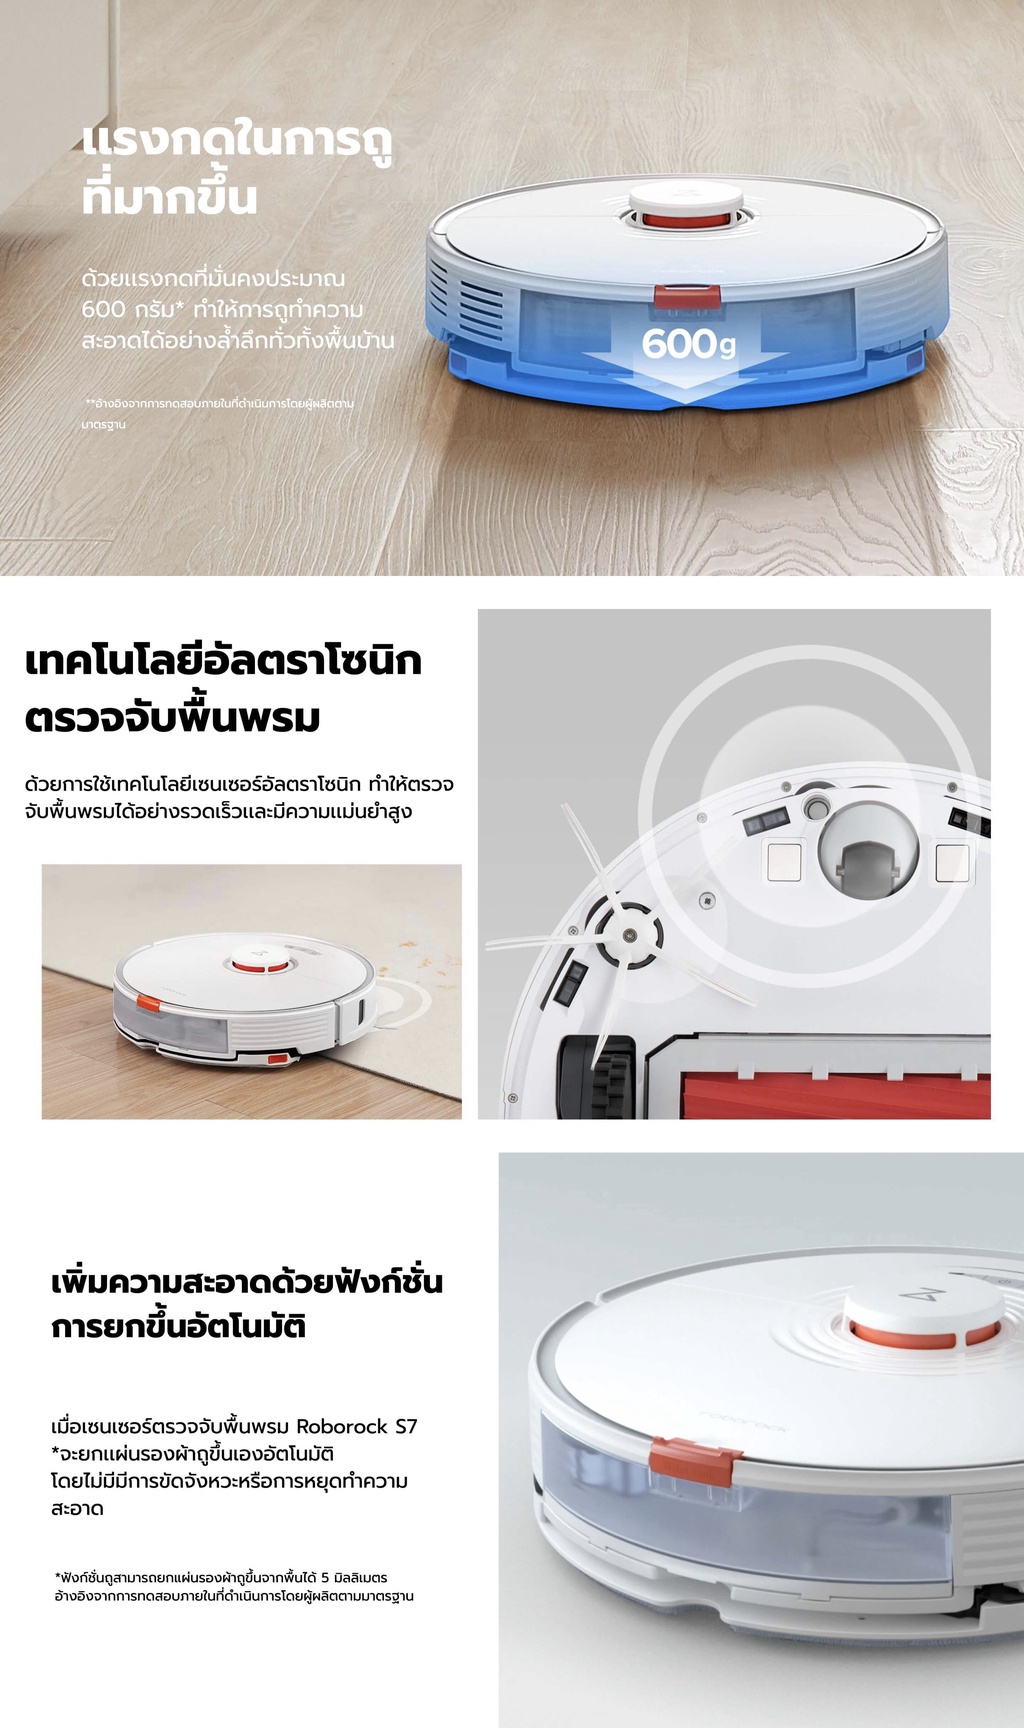 ภาพประกอบของ Roborock S7 Series (S7, S7 Plus) หุ่นยนต์ดูดฝุ่น ถูพื้น อัจฉริยะ - Smart Robotic Vacuum and Mop Cleaner